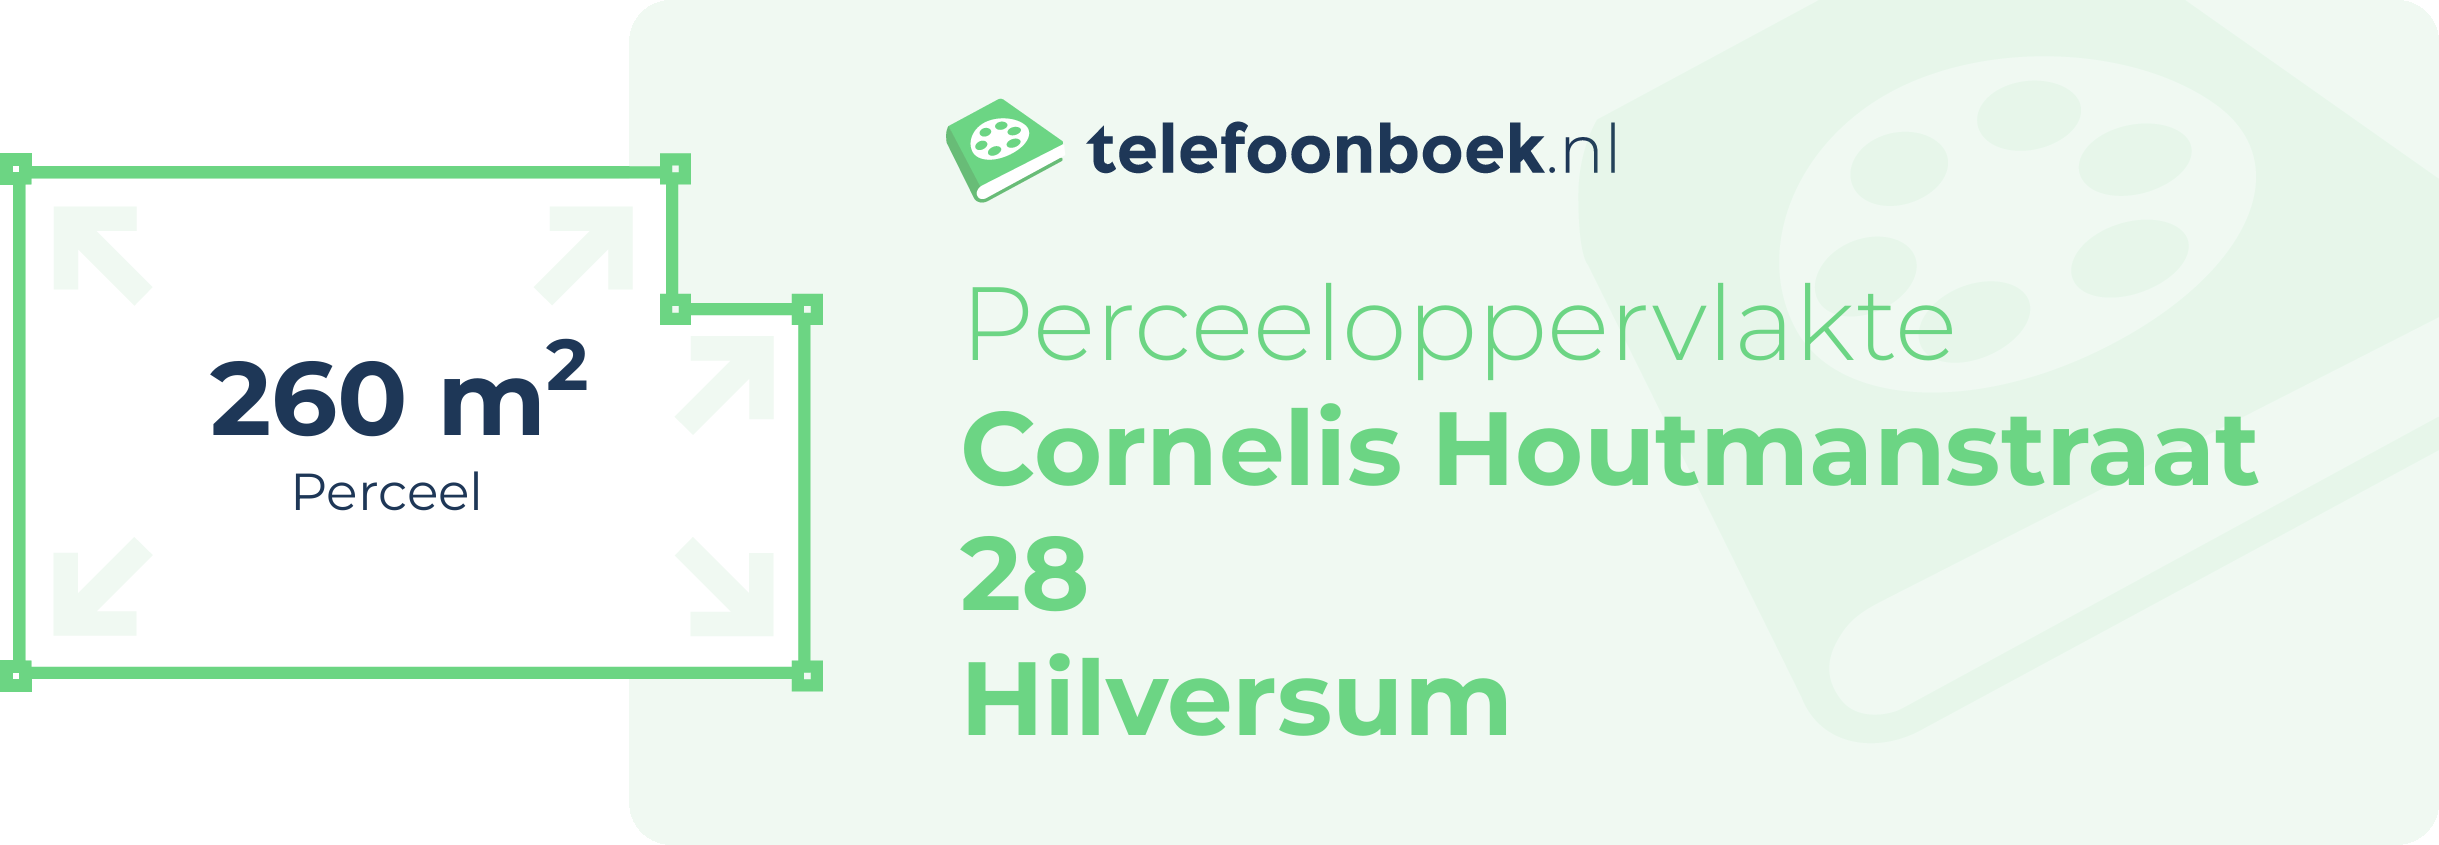 Perceeloppervlakte Cornelis Houtmanstraat 28 Hilversum